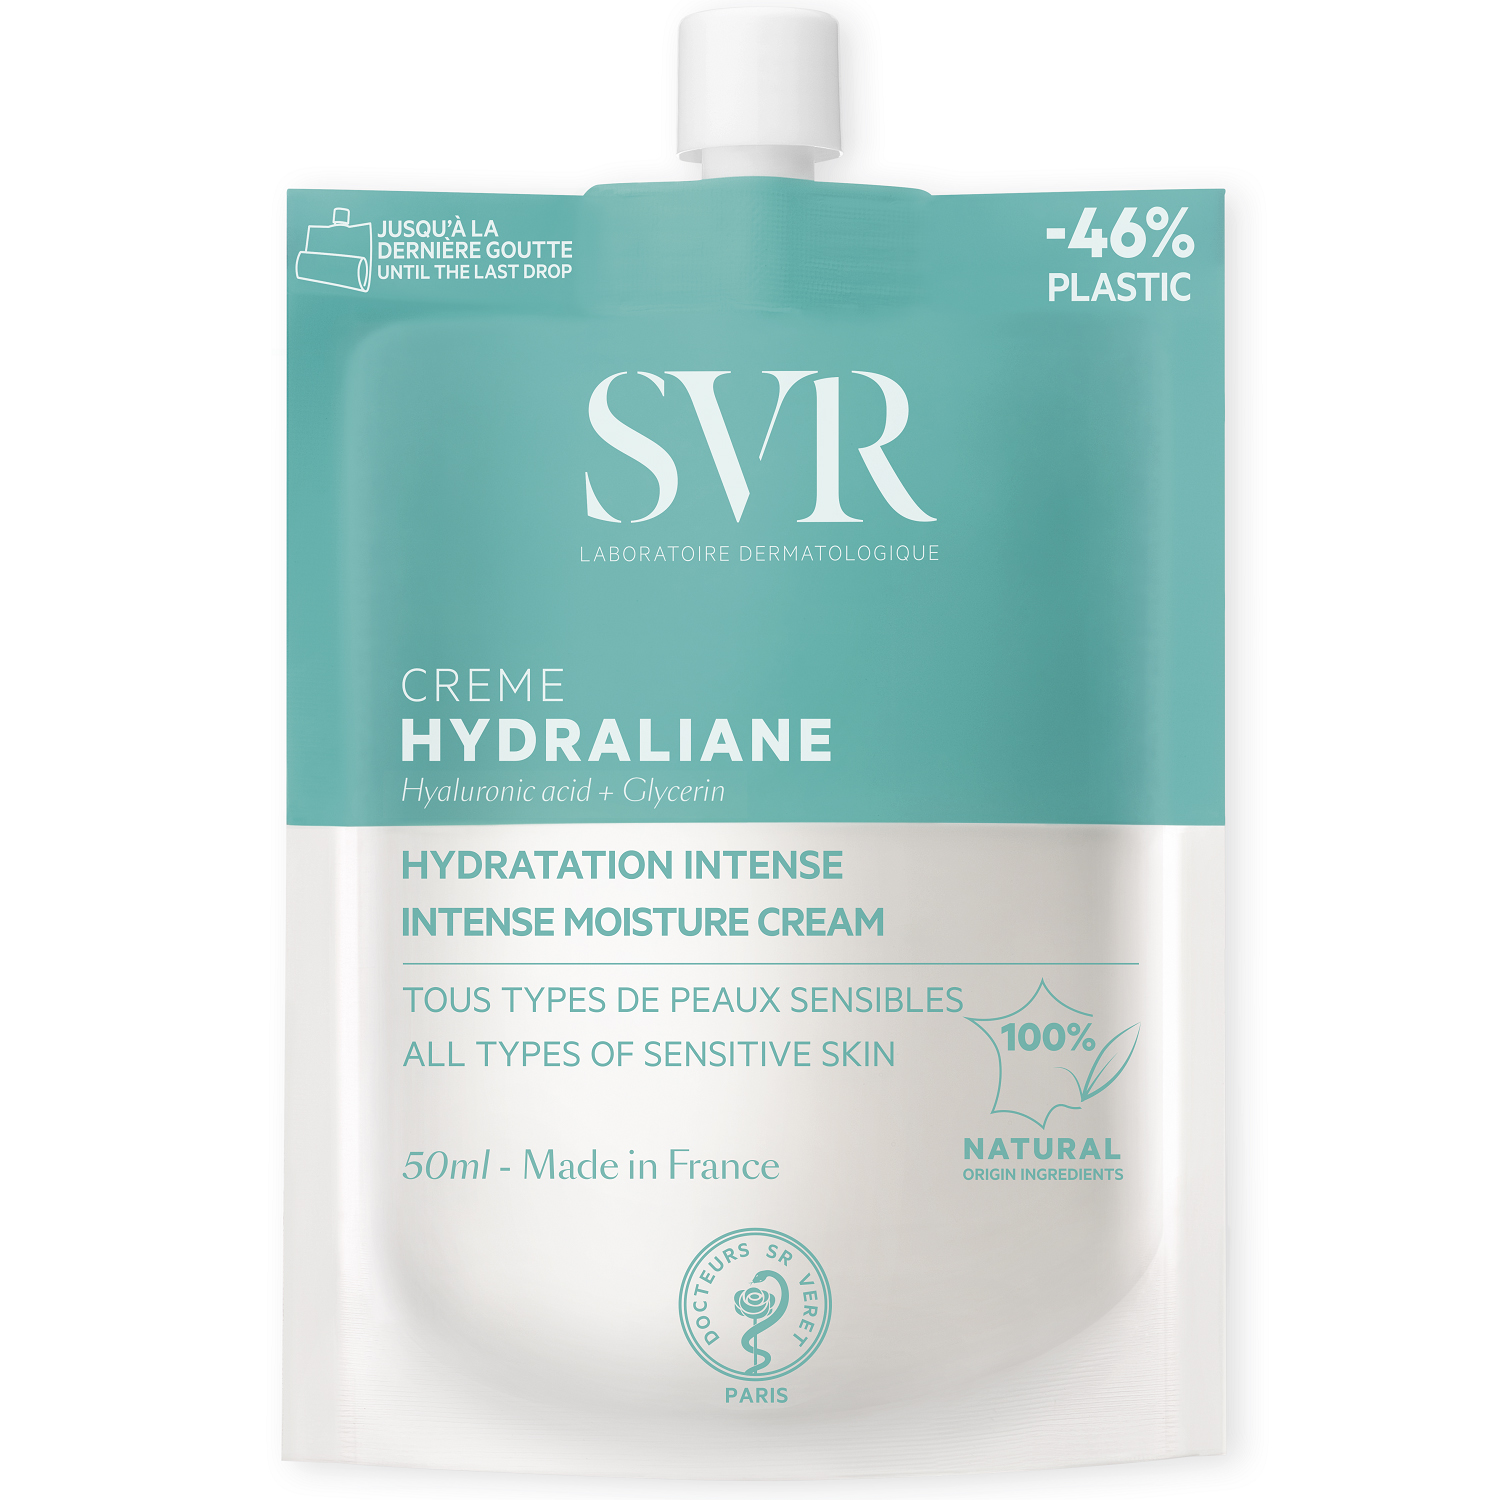 SVR Интенсивный увлажняющий крем для всех типов чувствительной кожи, 50 мл (SVR, Hydraliane)